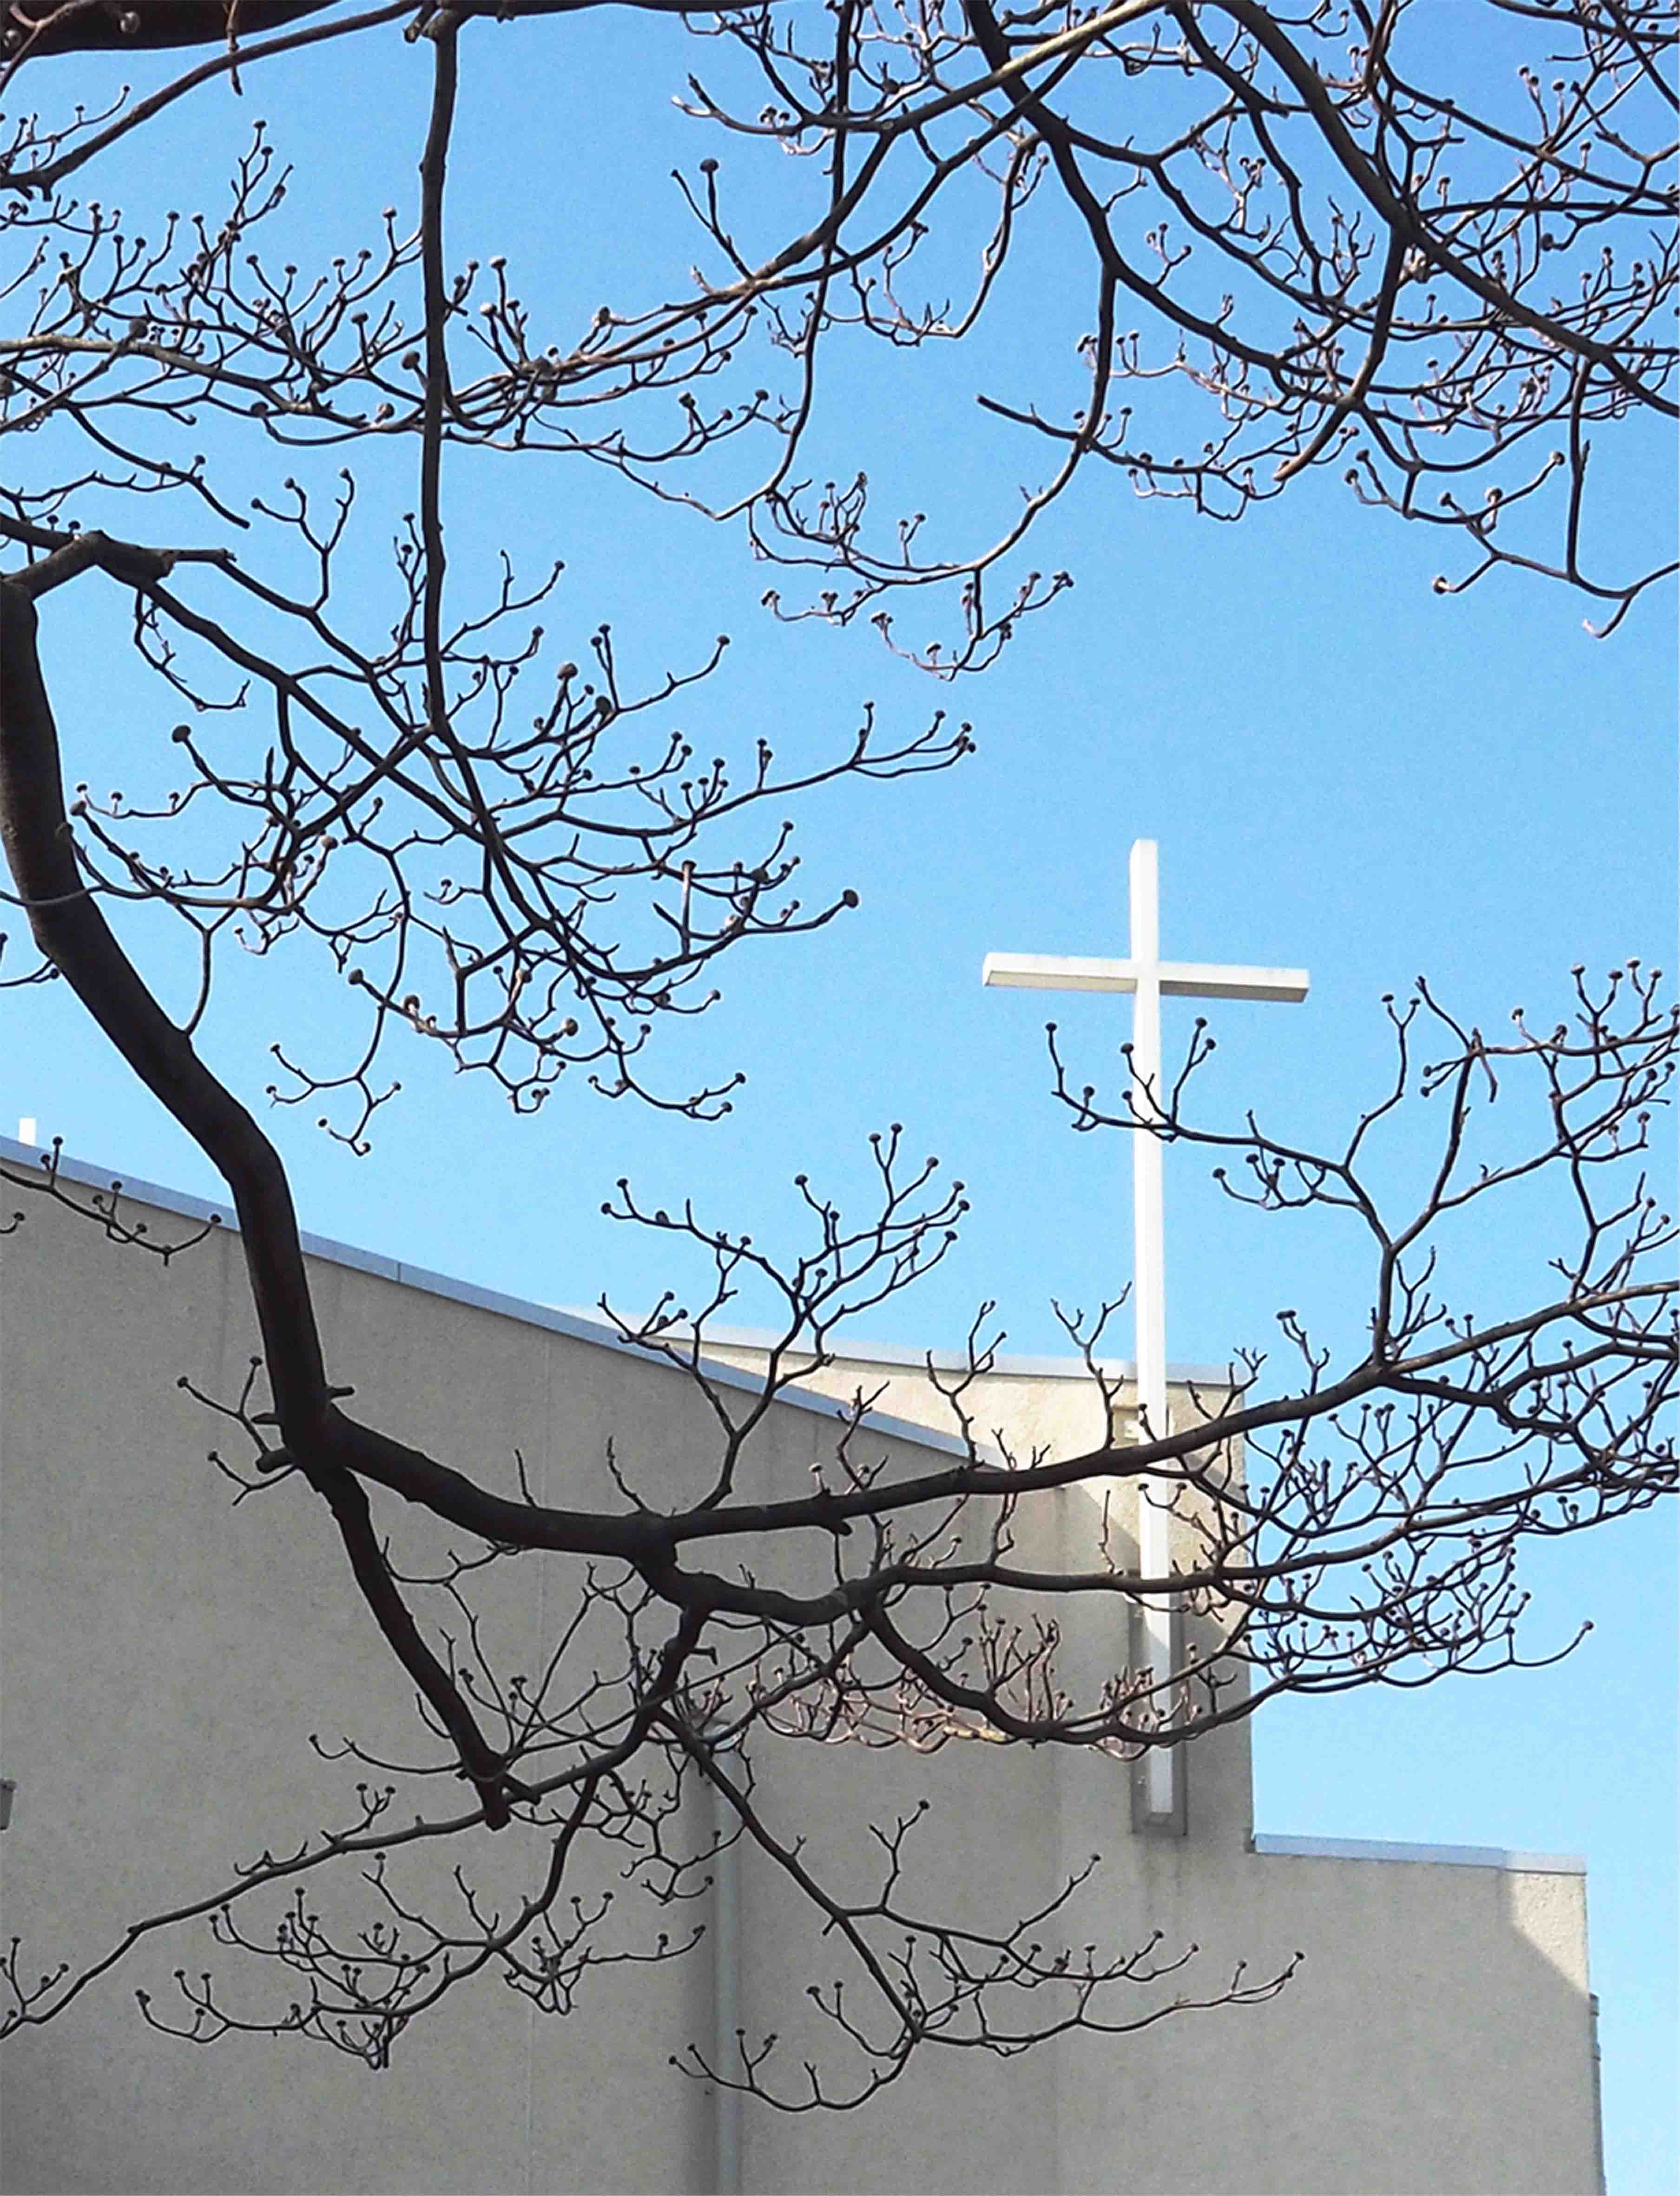 冬枯れの花水木の枝越しに見る、白く輝く聖マーガレット教会の十字架